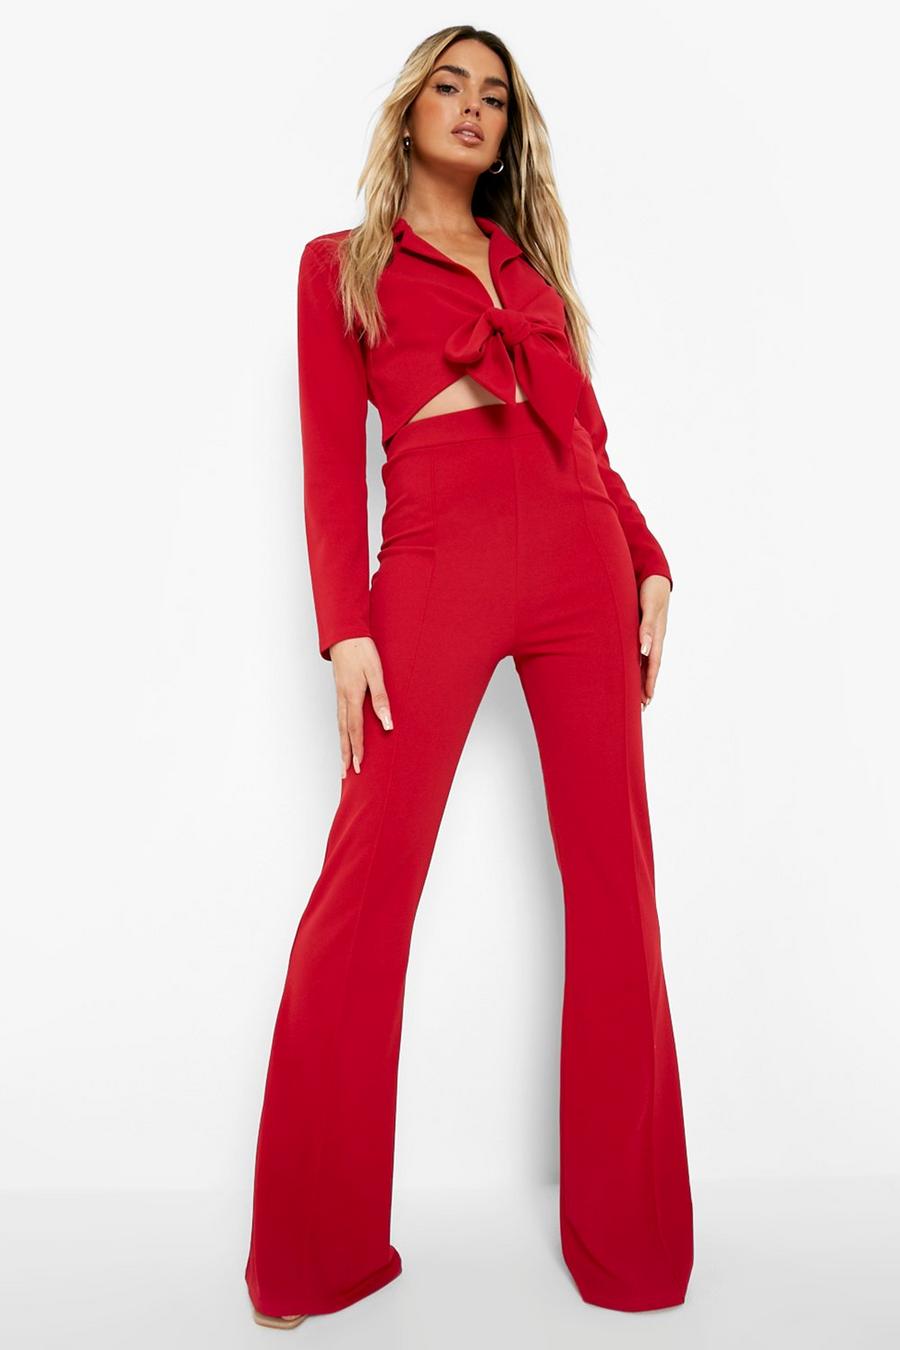 אדום rojo חליפת בלייזר קרופ עם קשר בחזית ומכנסיים מתרחבים